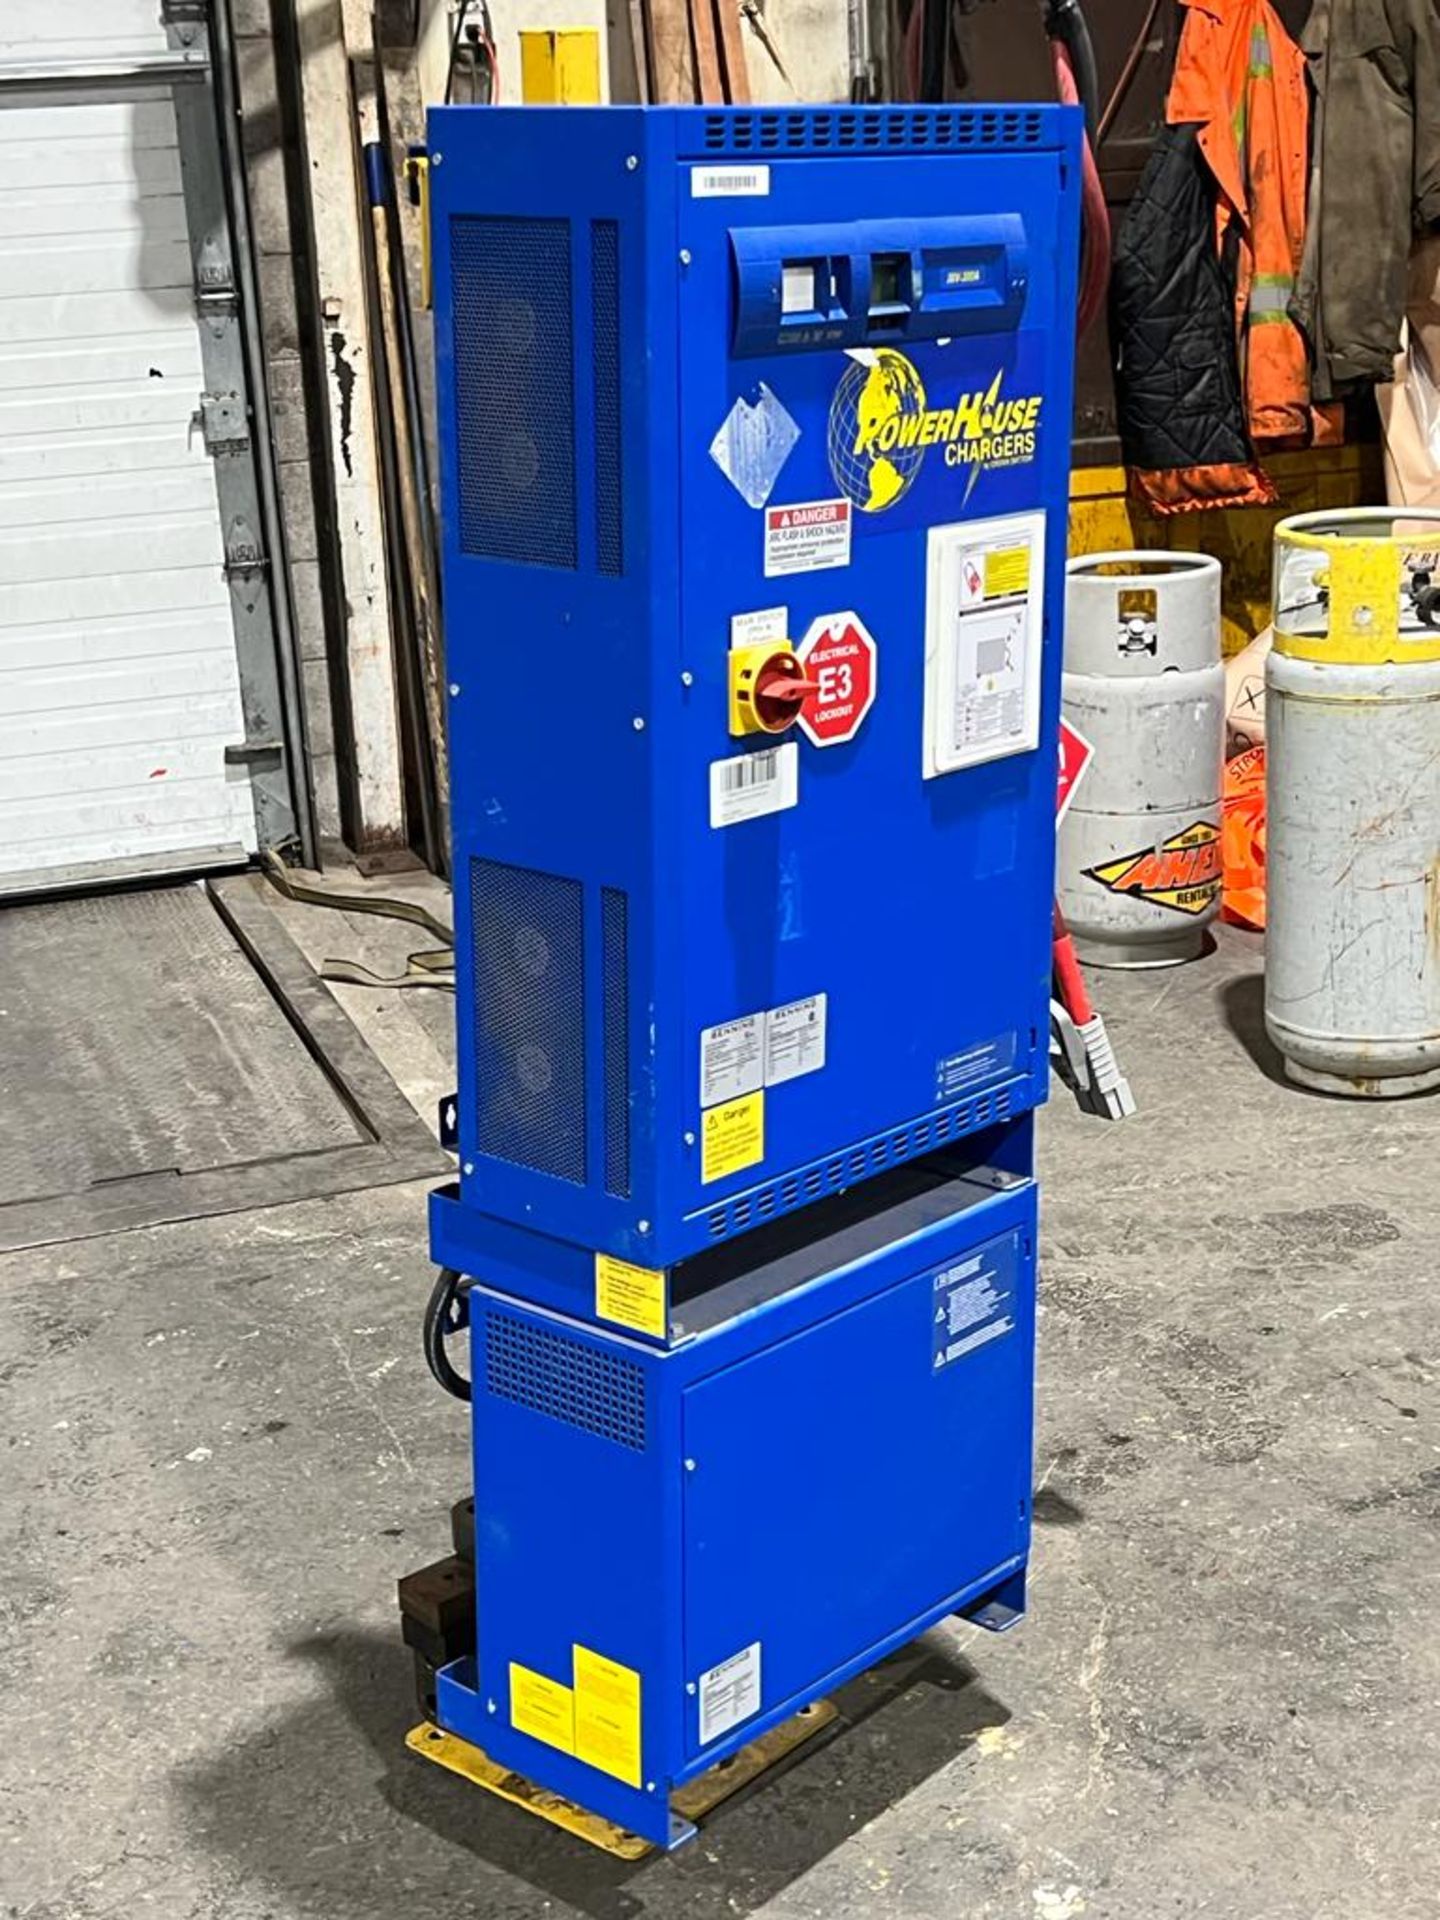 Benning Forklift Battery Charger - 36V - 3 phase input 600V & transformer to 480V on pedestal - Image 2 of 2